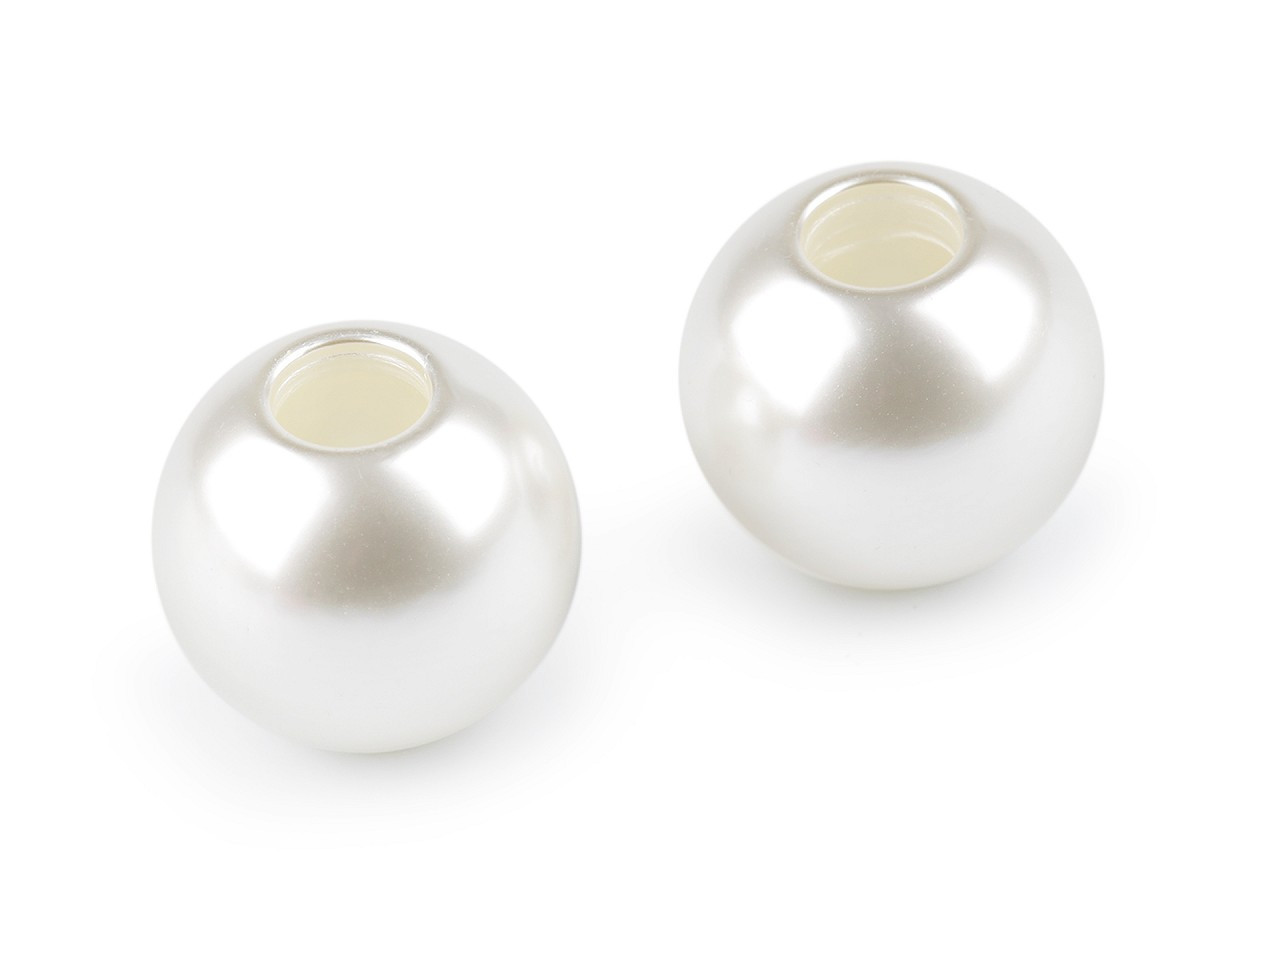 Plastové voskové korále Ø30 mm, barva 1 (F2) bílá perleť